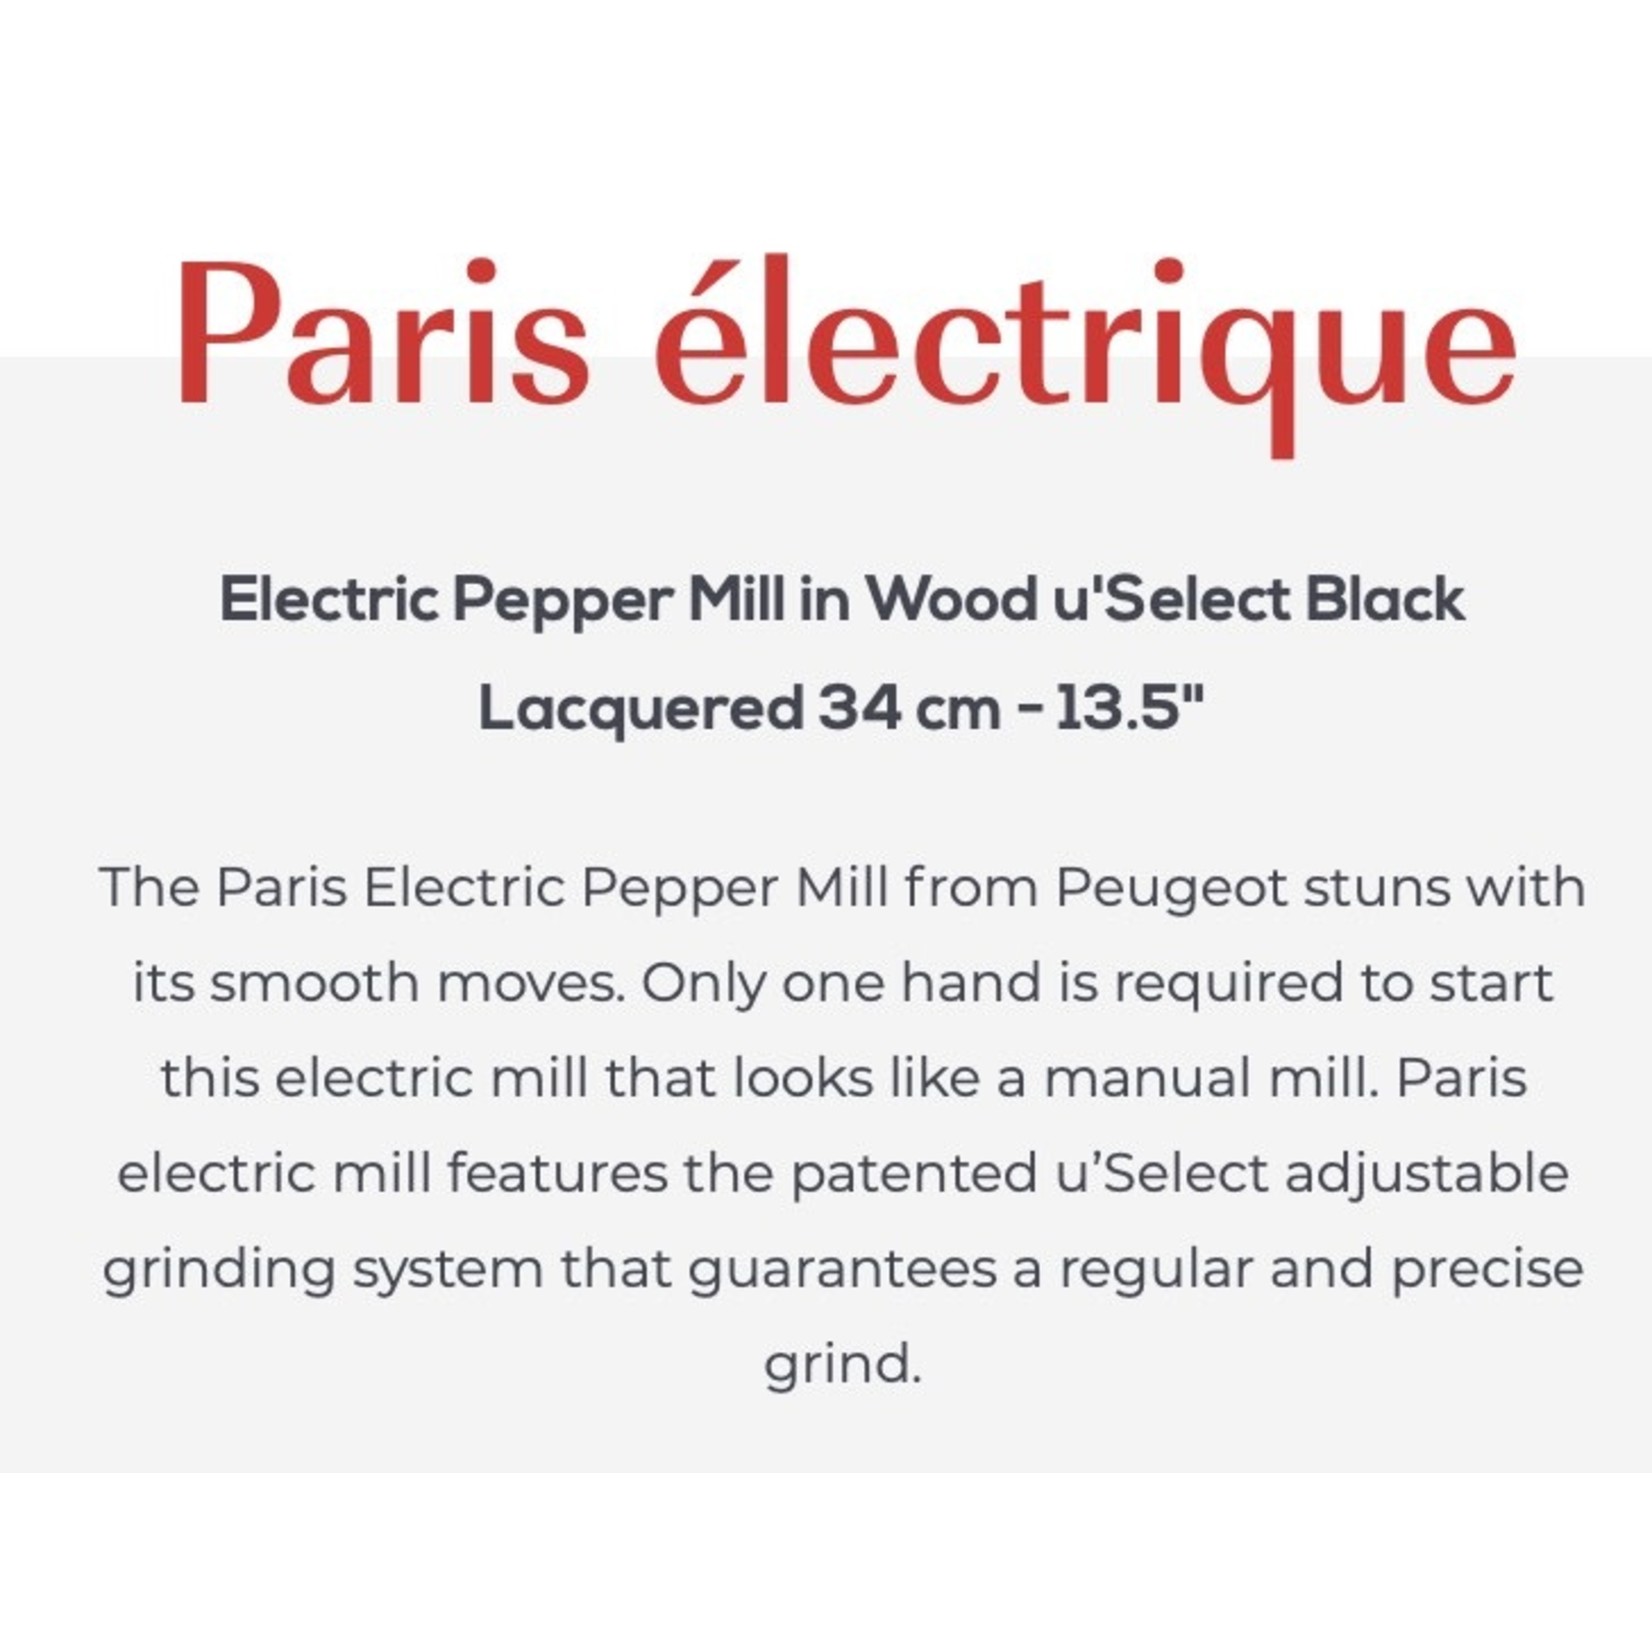 PEUGEOT PEUGEOT Paris Electric Pepper Mill 34cm - Black Lacquer